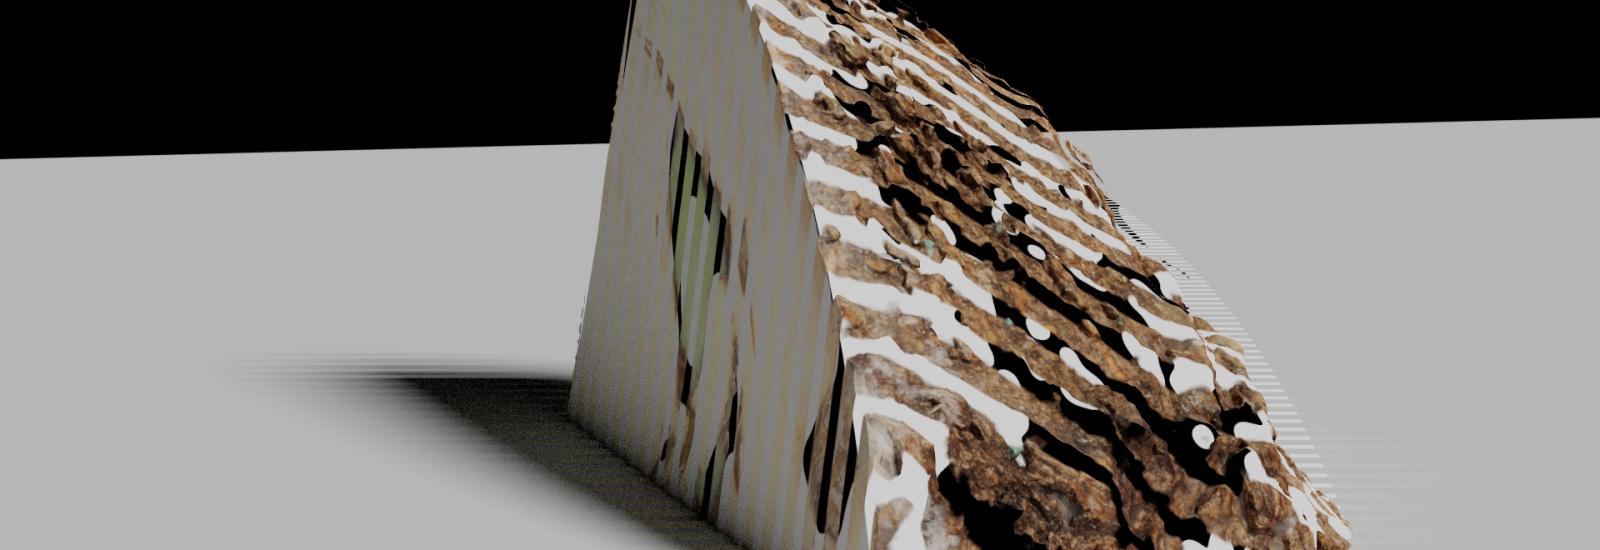 digital render of a 3d sculpture resembling a rock cut in half